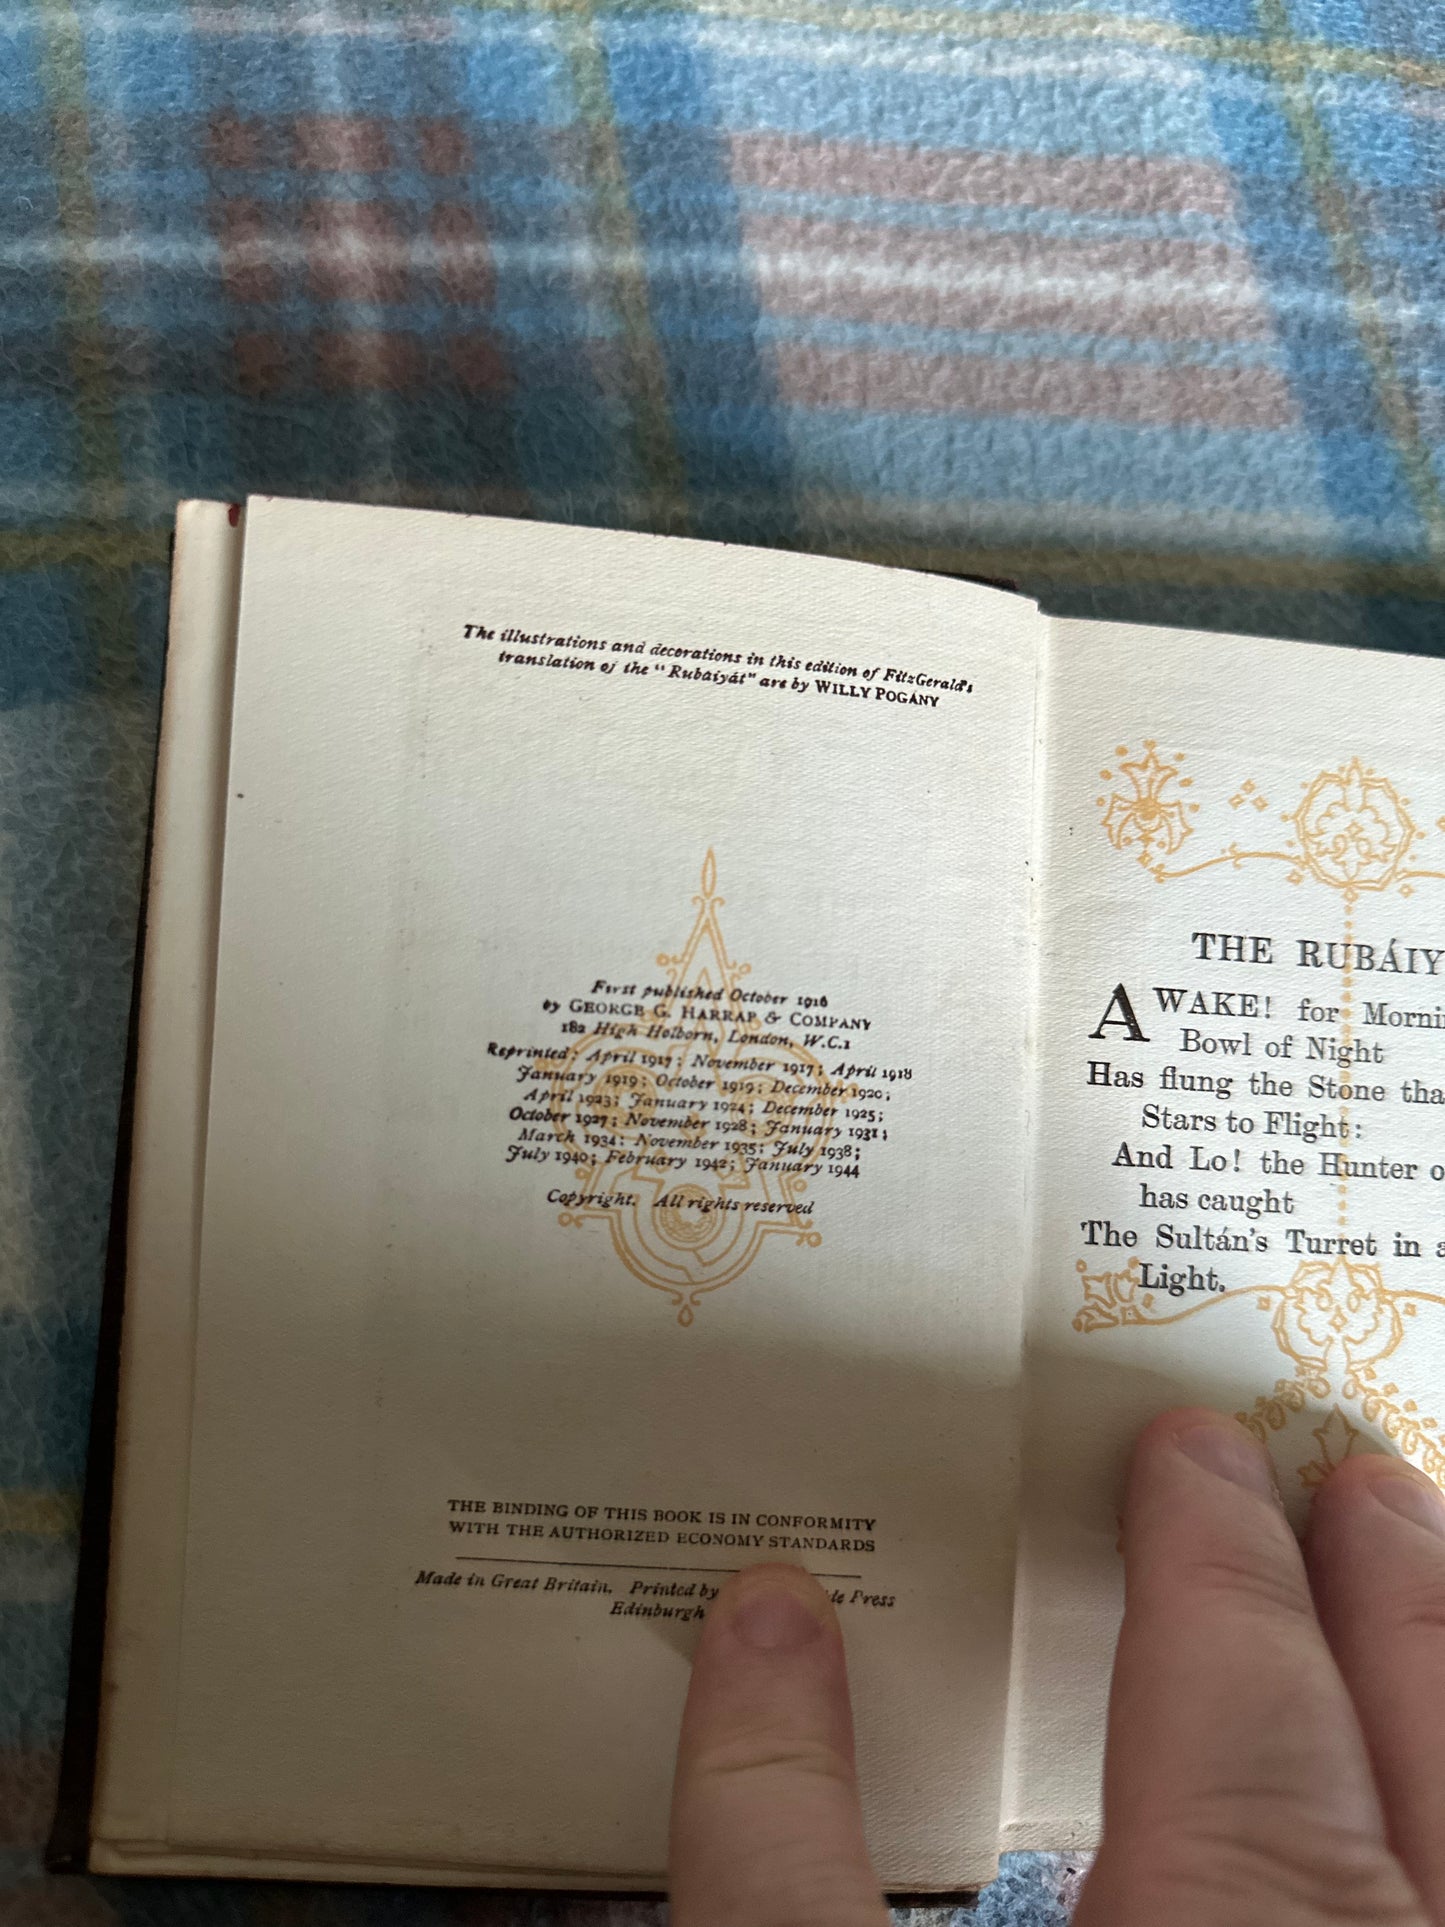 1944 Rubáiyát Of Omar Khayyám translated by Edward Fitzgerald (Illustrated by Willy Pogany) George G. Harrap Publisher